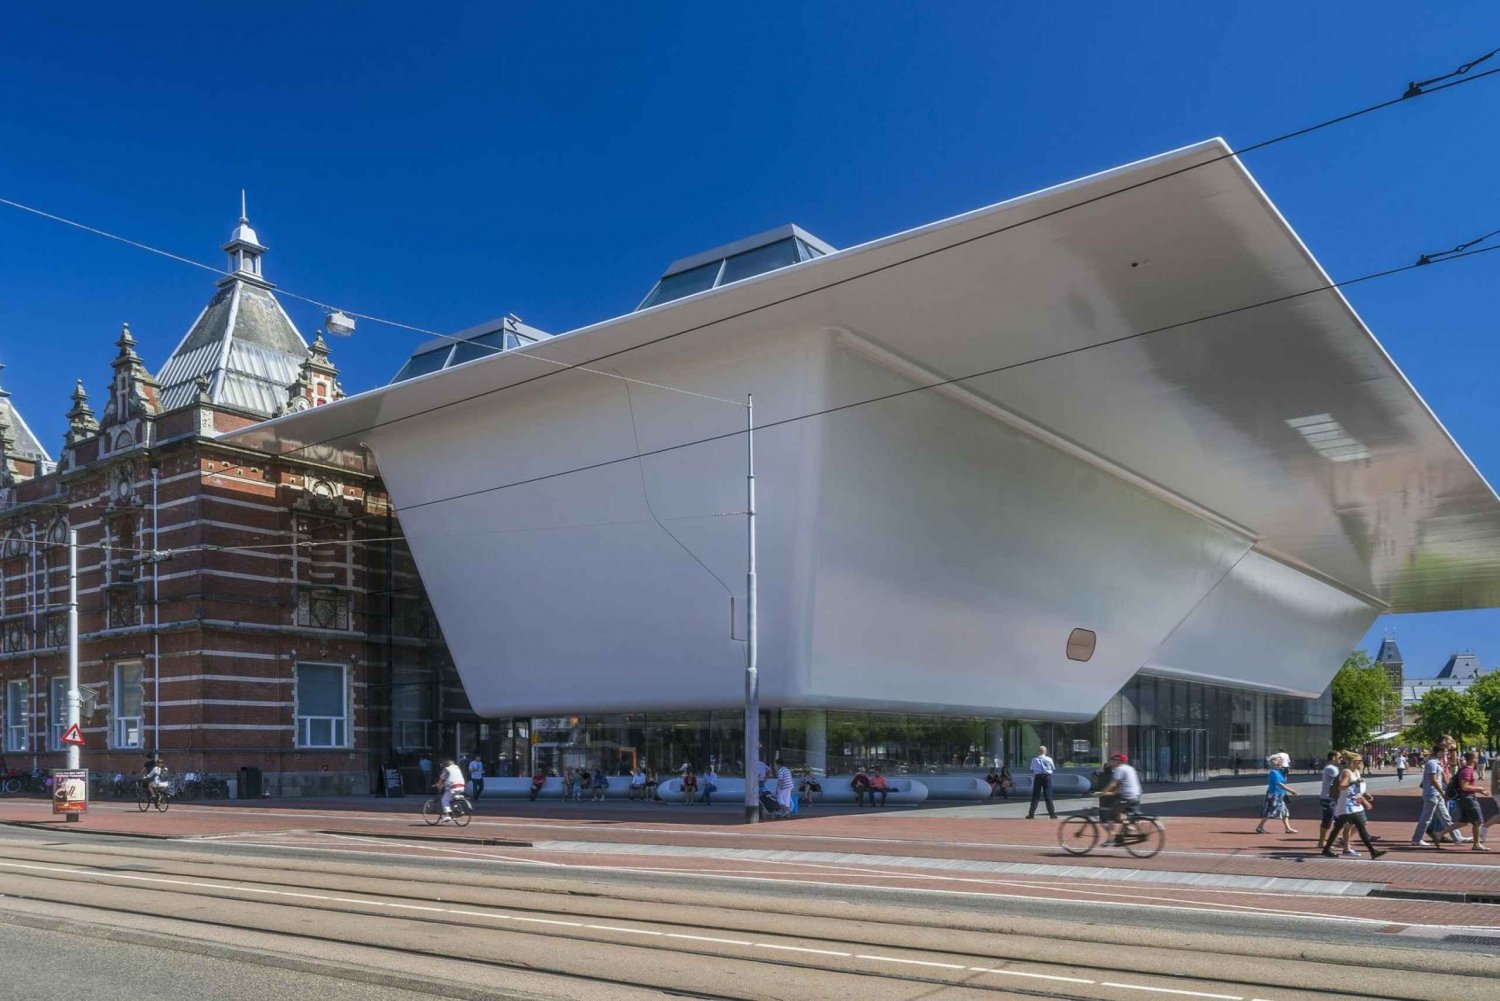 Amsterdam: Adgang til Stedelijk Museum og mulighed for Abramović-udstilling